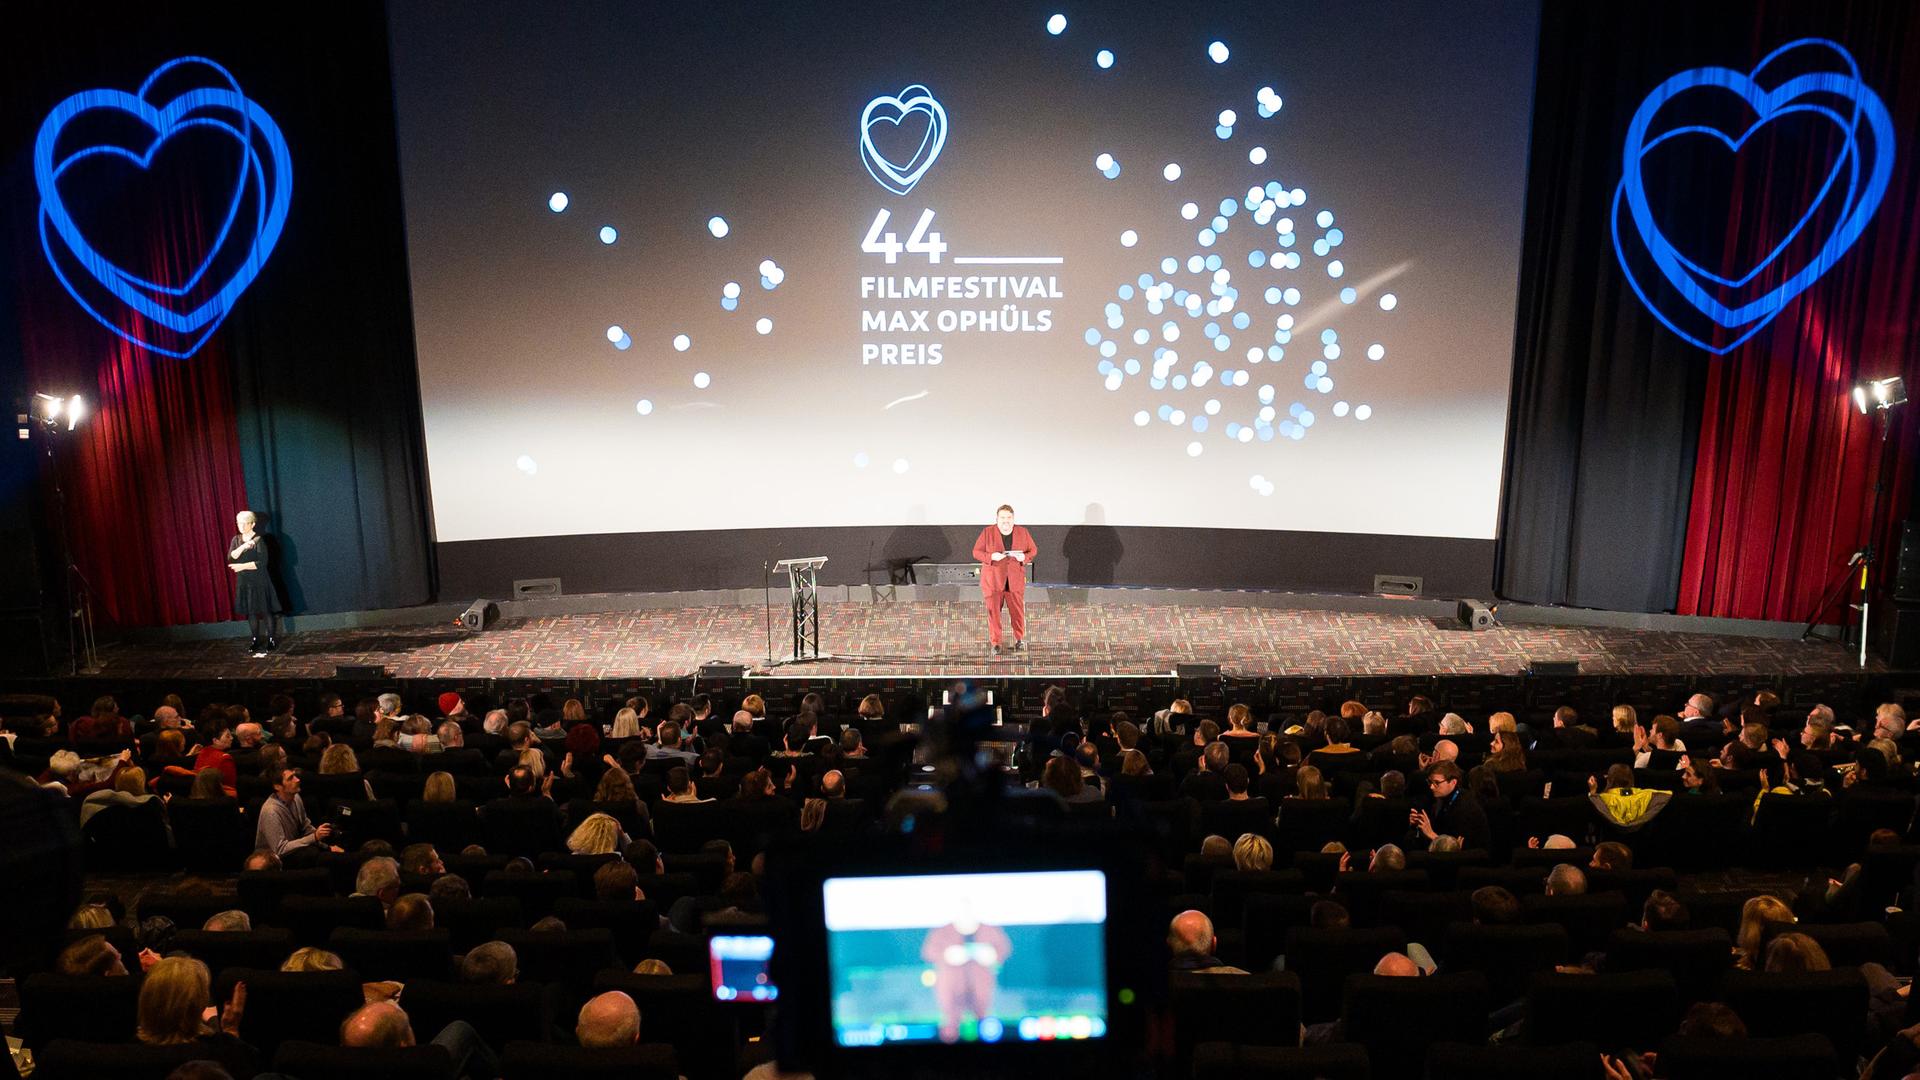 Die Bühne bei der Eröffnung des 44. Filmfestival Max Ophüls Preis, umgeben von Publikum. Im Hintergrund eine Projektion mit Herzen und dem Schrfitzug "44. Filmfestival Max Ophüls Preis"